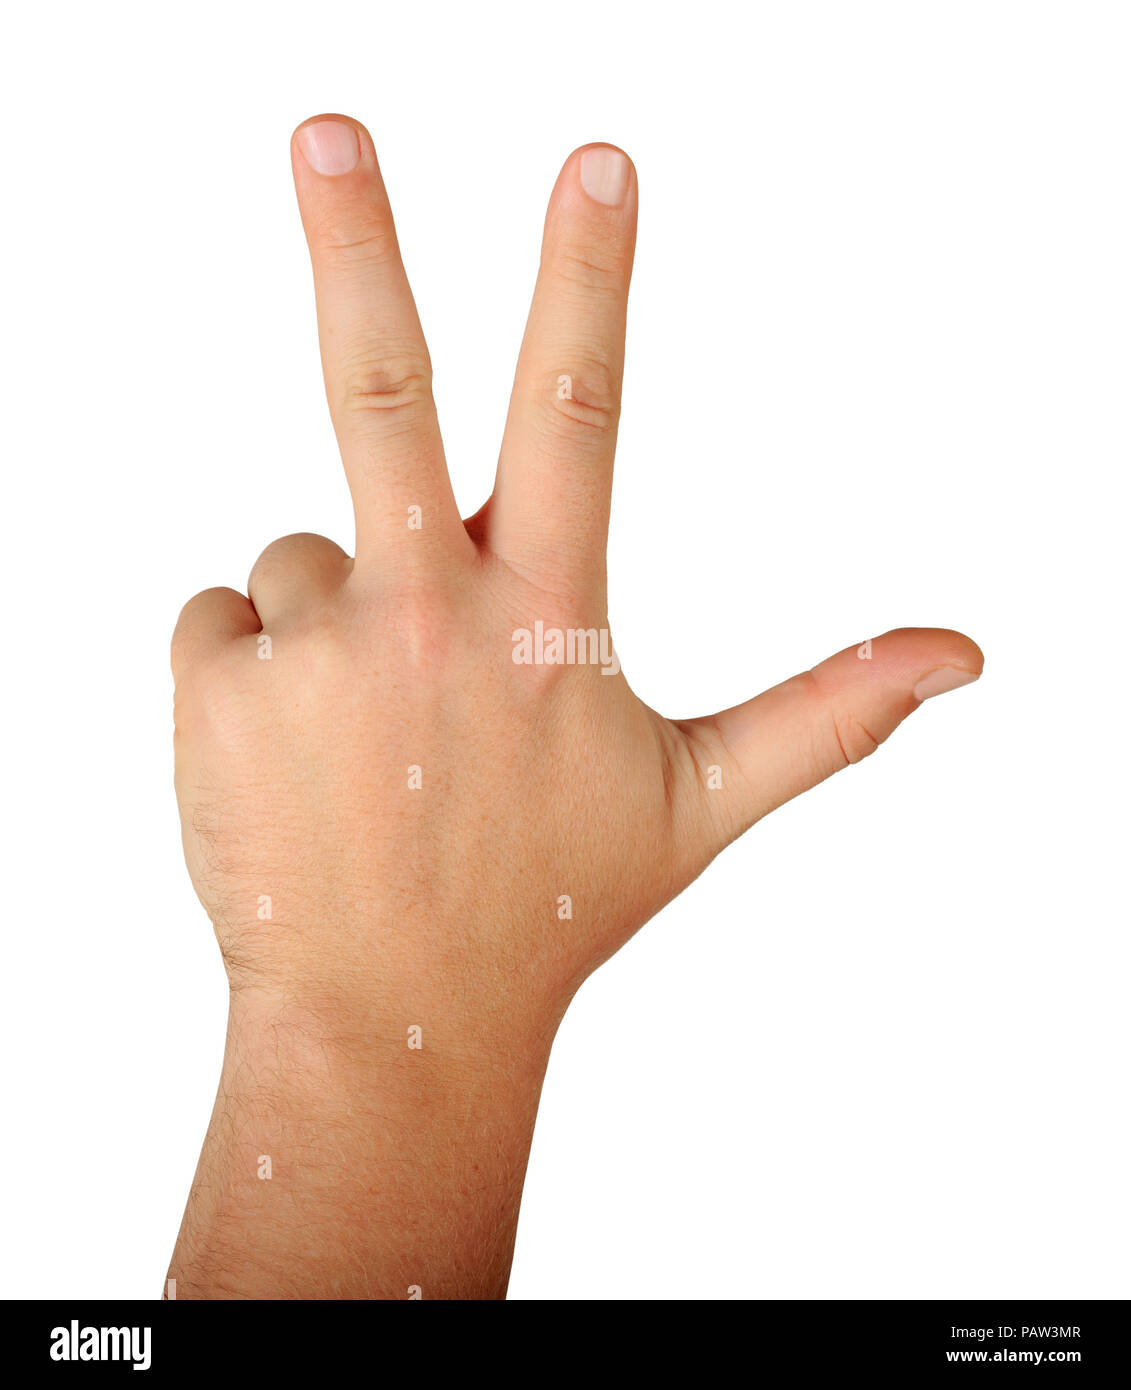 Geste männliche Hand mit drei Fingern Rückansicht auf weißem Hintergrund.  Finger zählen drei Stockfotografie - Alamy